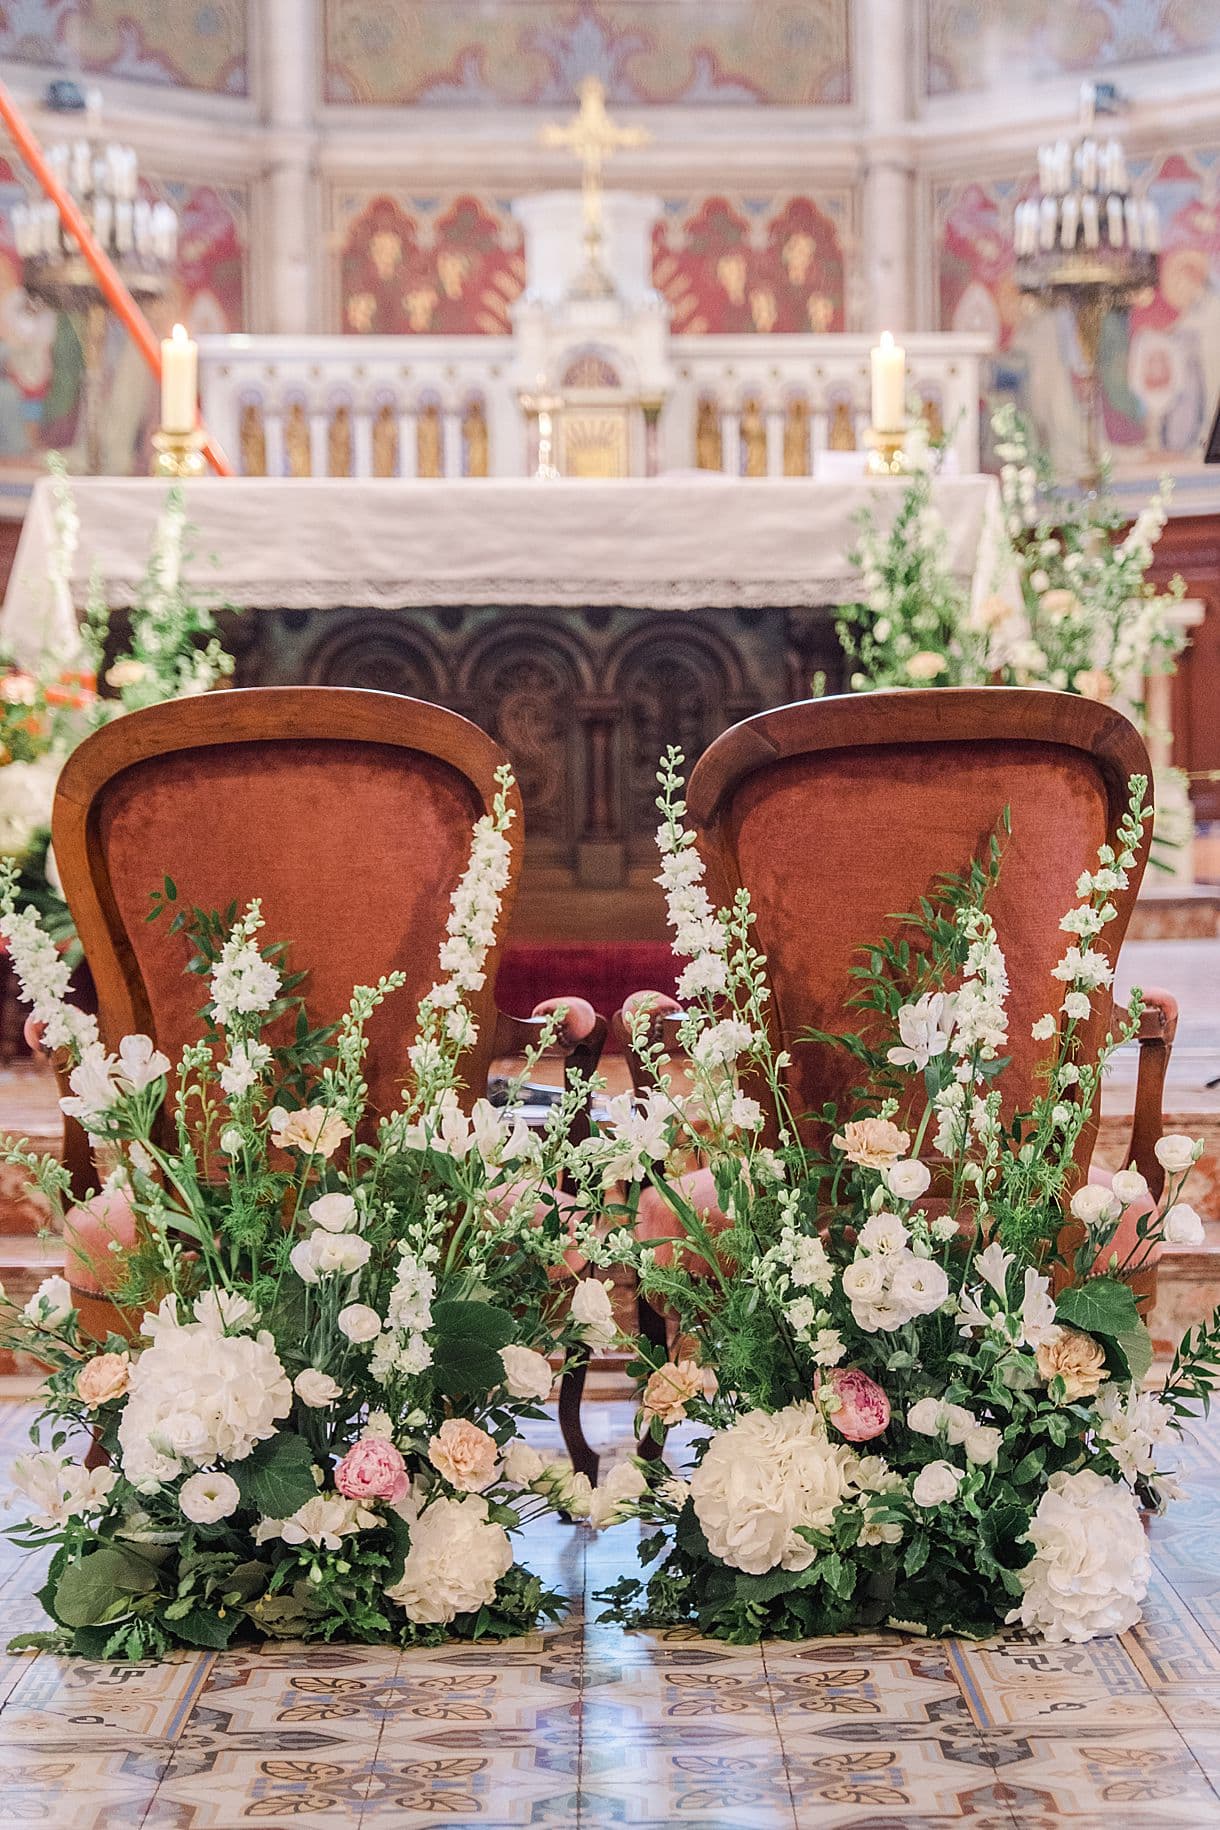 détails des fleurs dans l'église d'arcachon photo prise par julien boyer pixaile photography